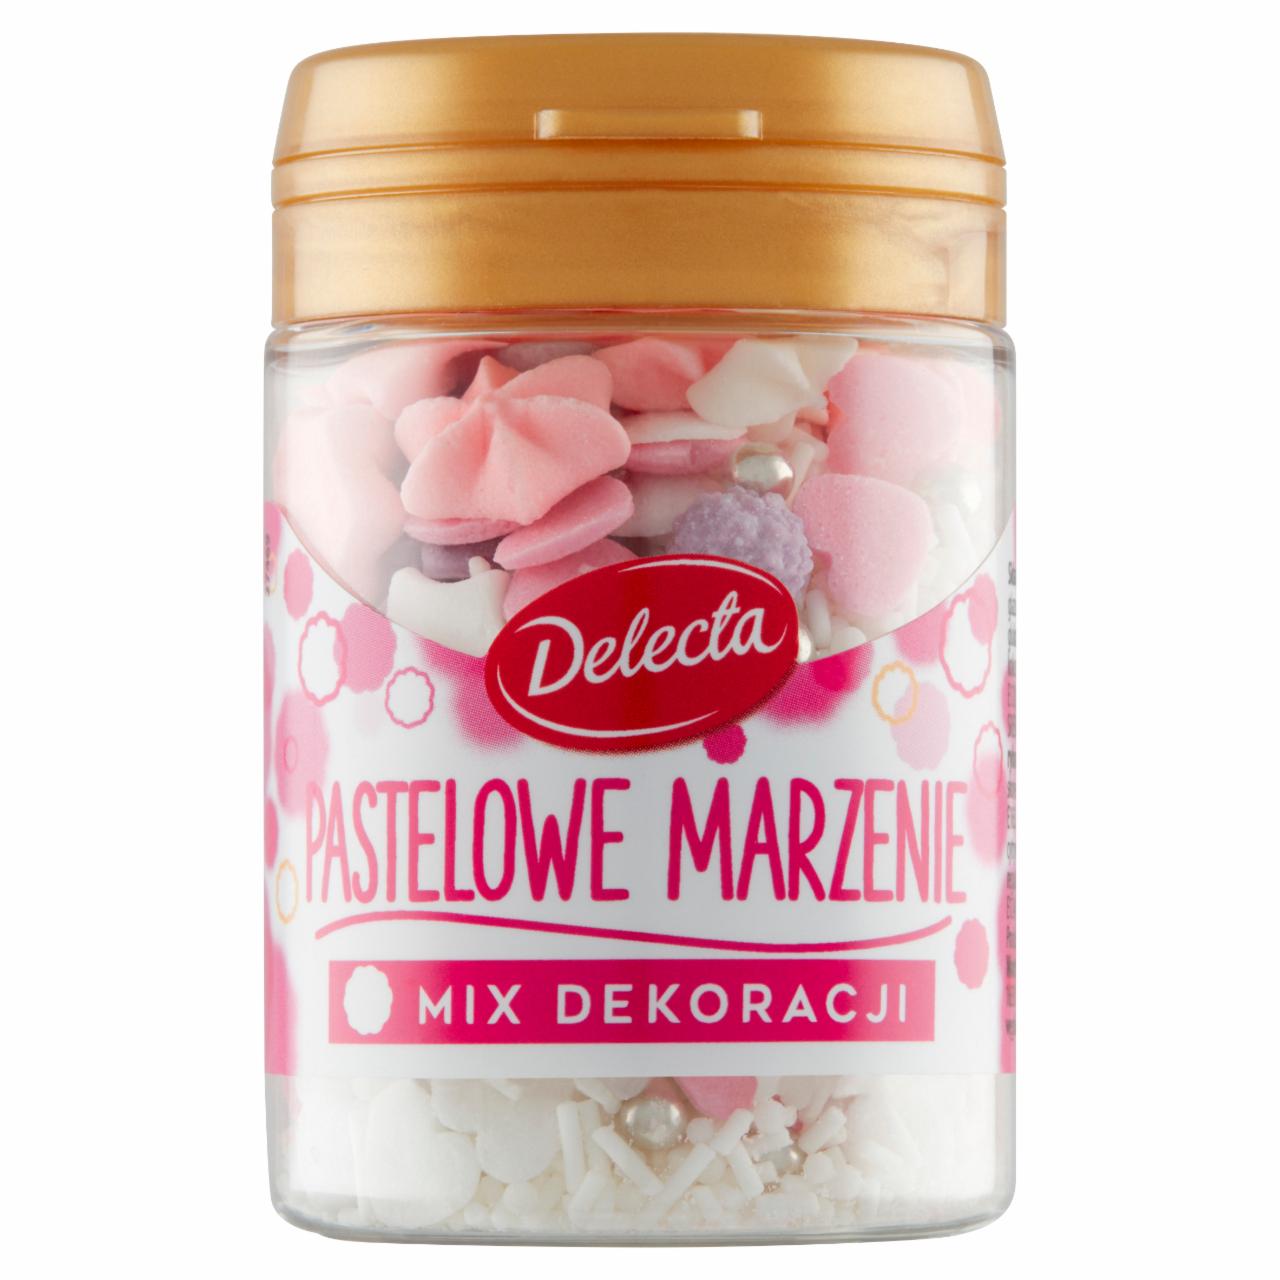 Zdjęcia - Delecta Mix dekoracji pastelowe marzenie 55 g